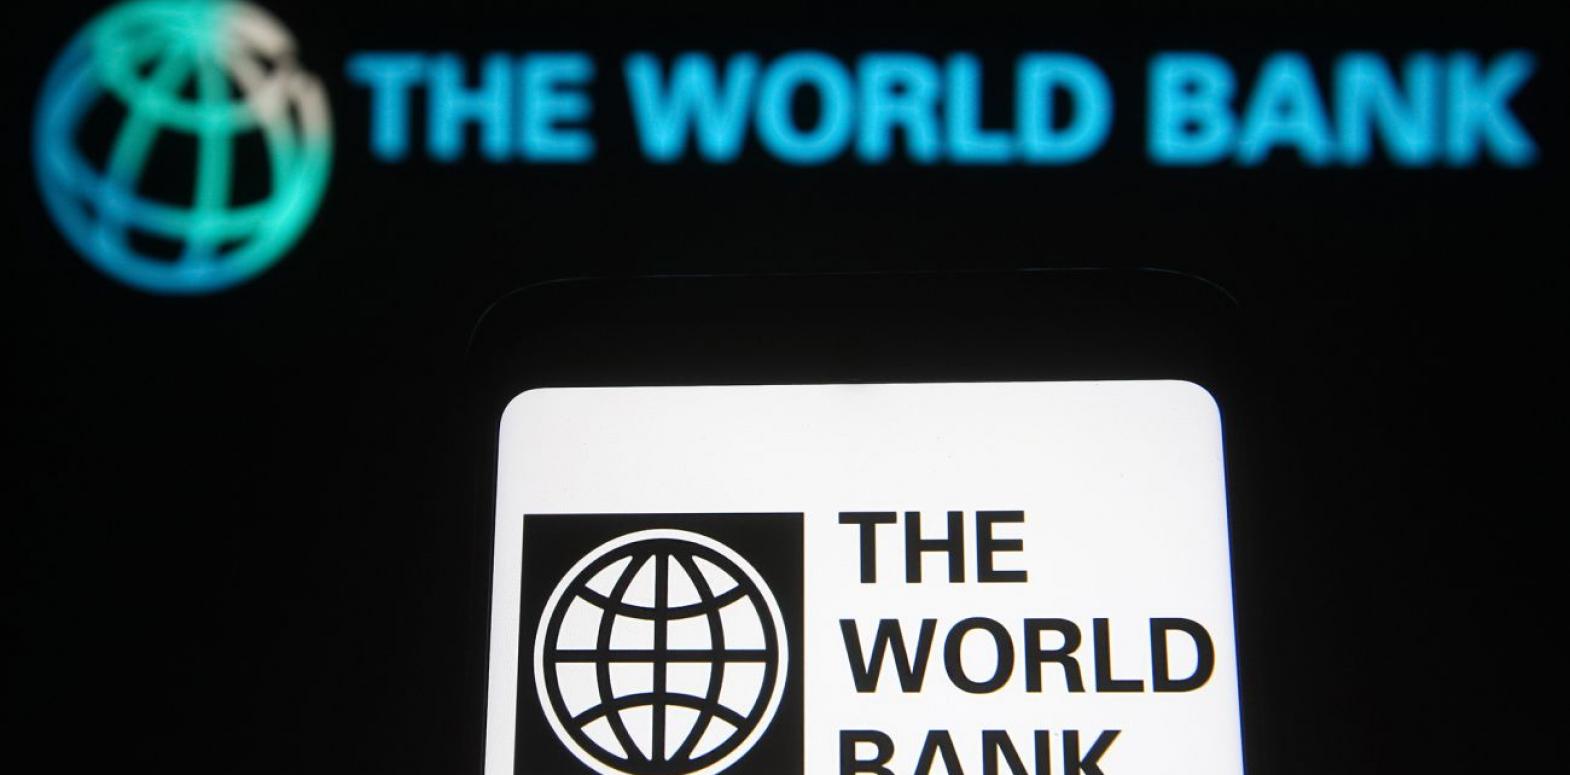 Украина получила 1,5 млрд долларов от Всемирного банка под гарантии Японии и Британии